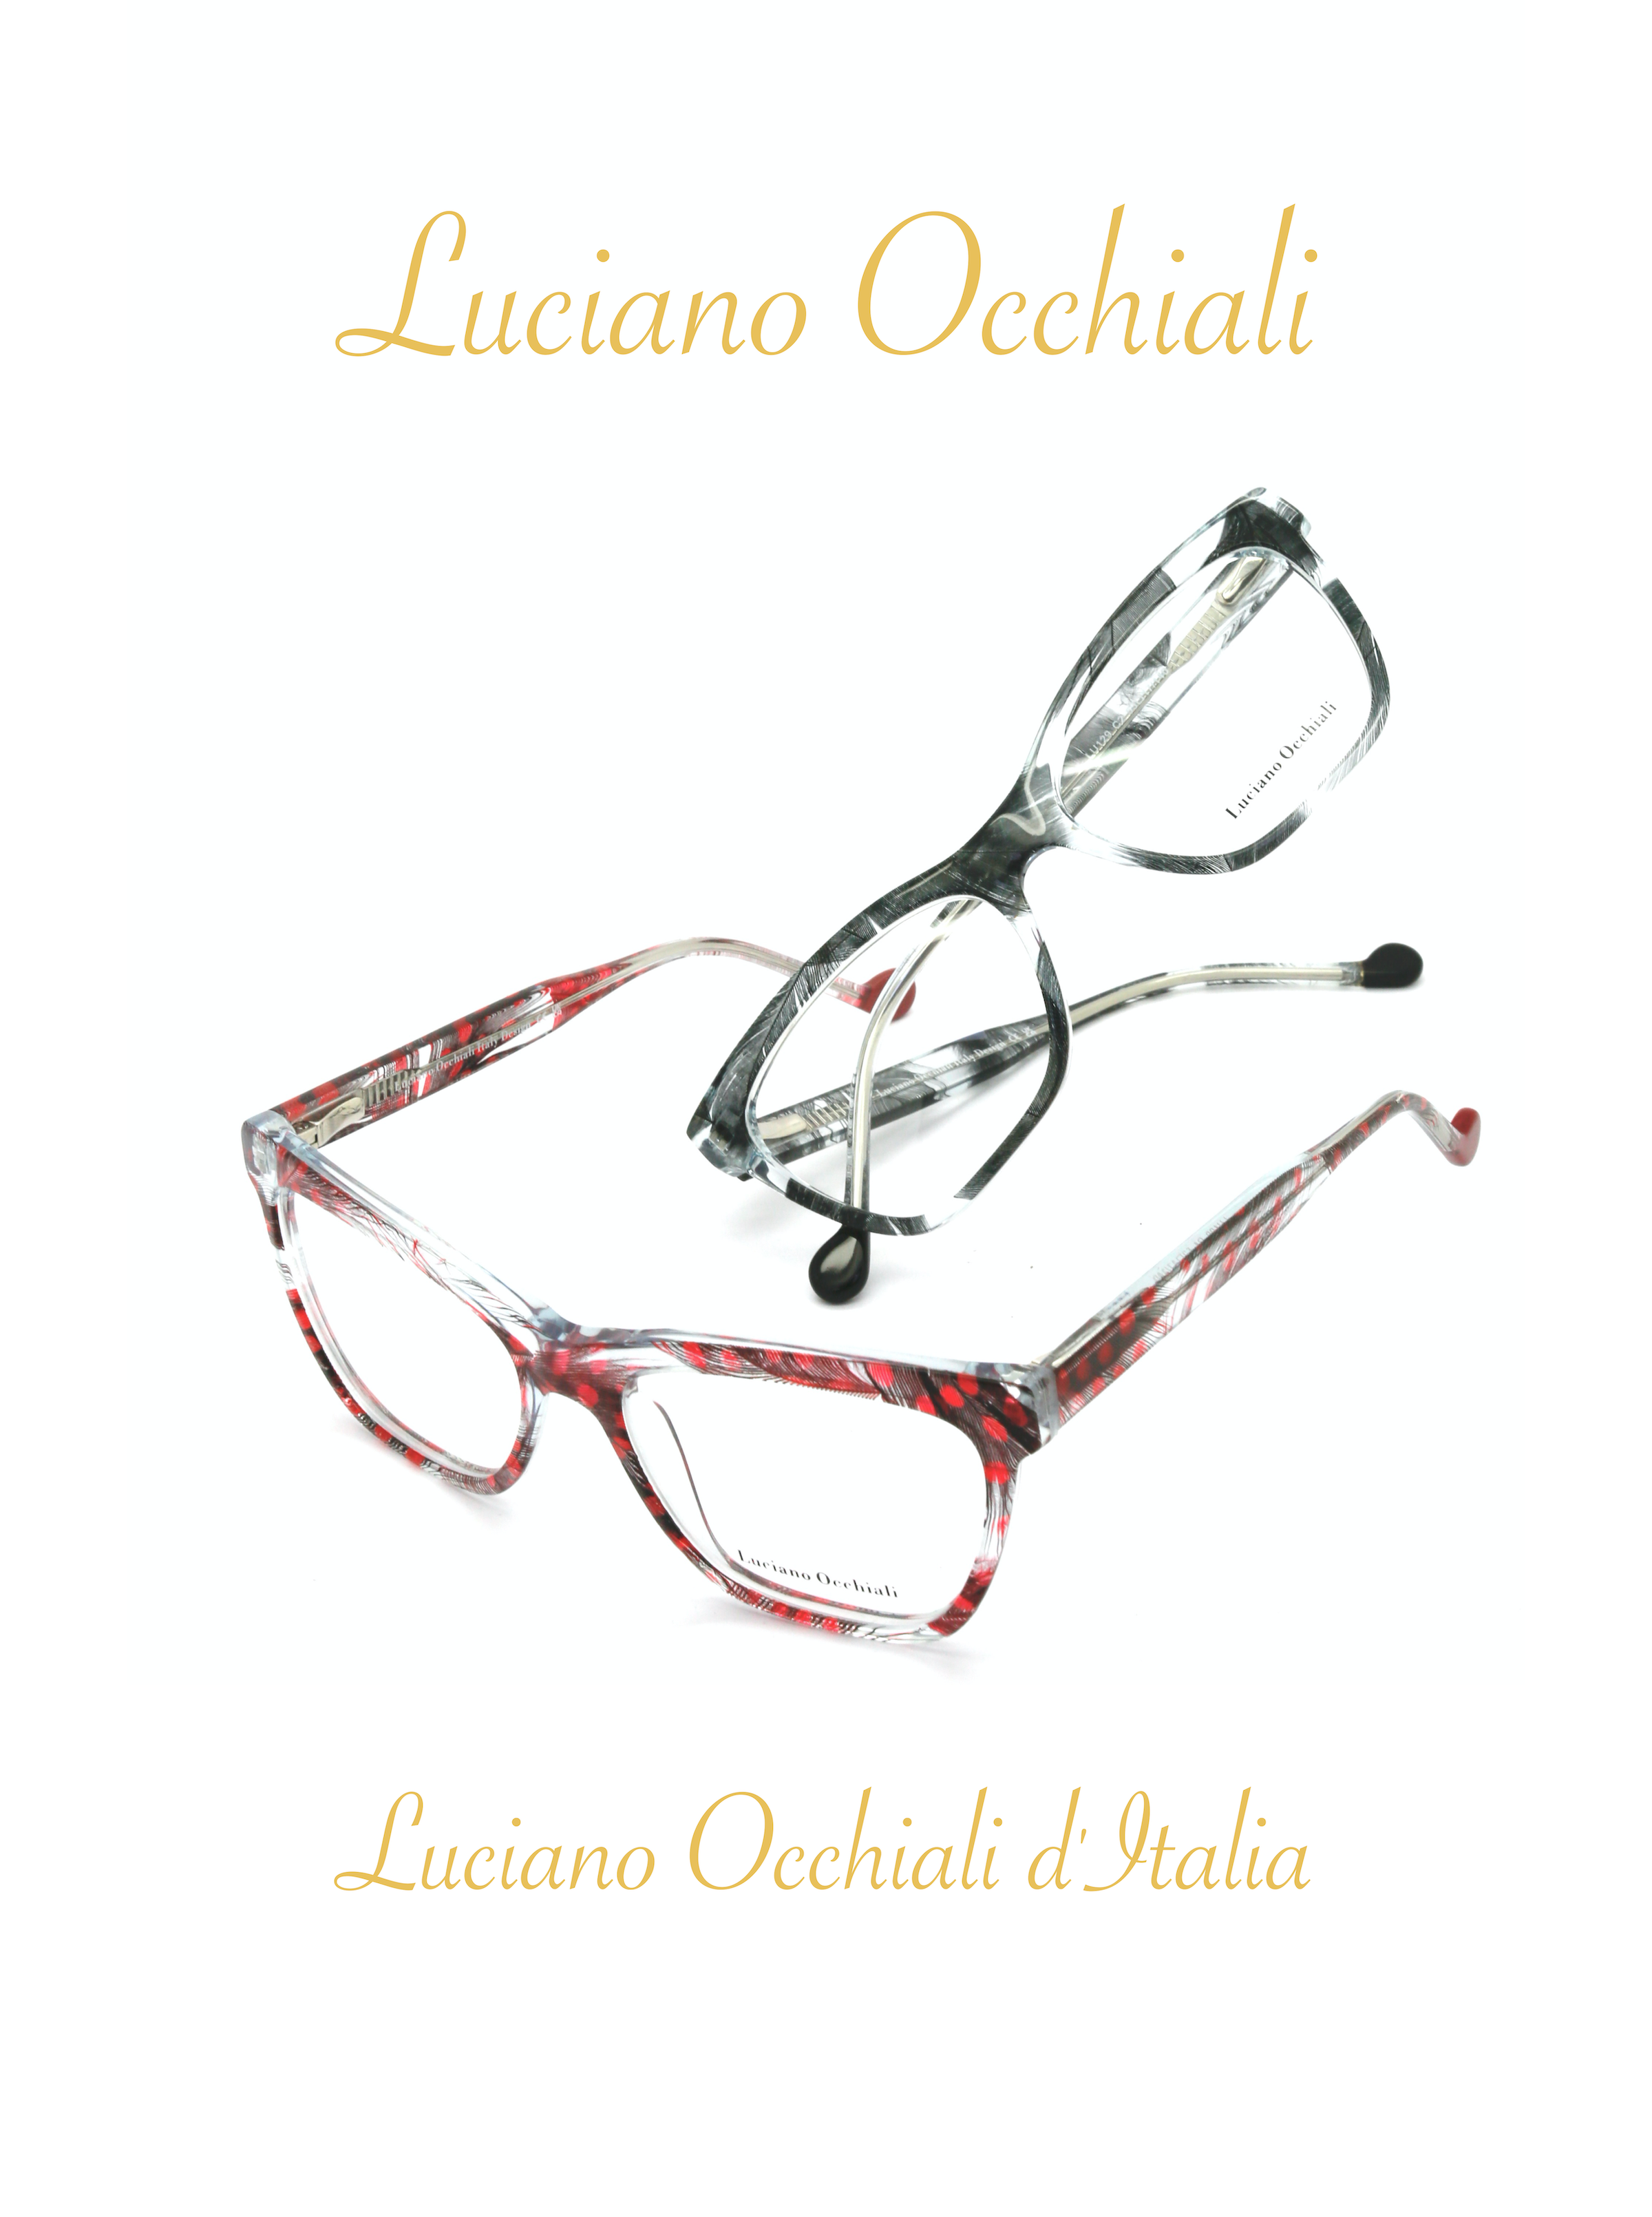 Luciano Occhiali